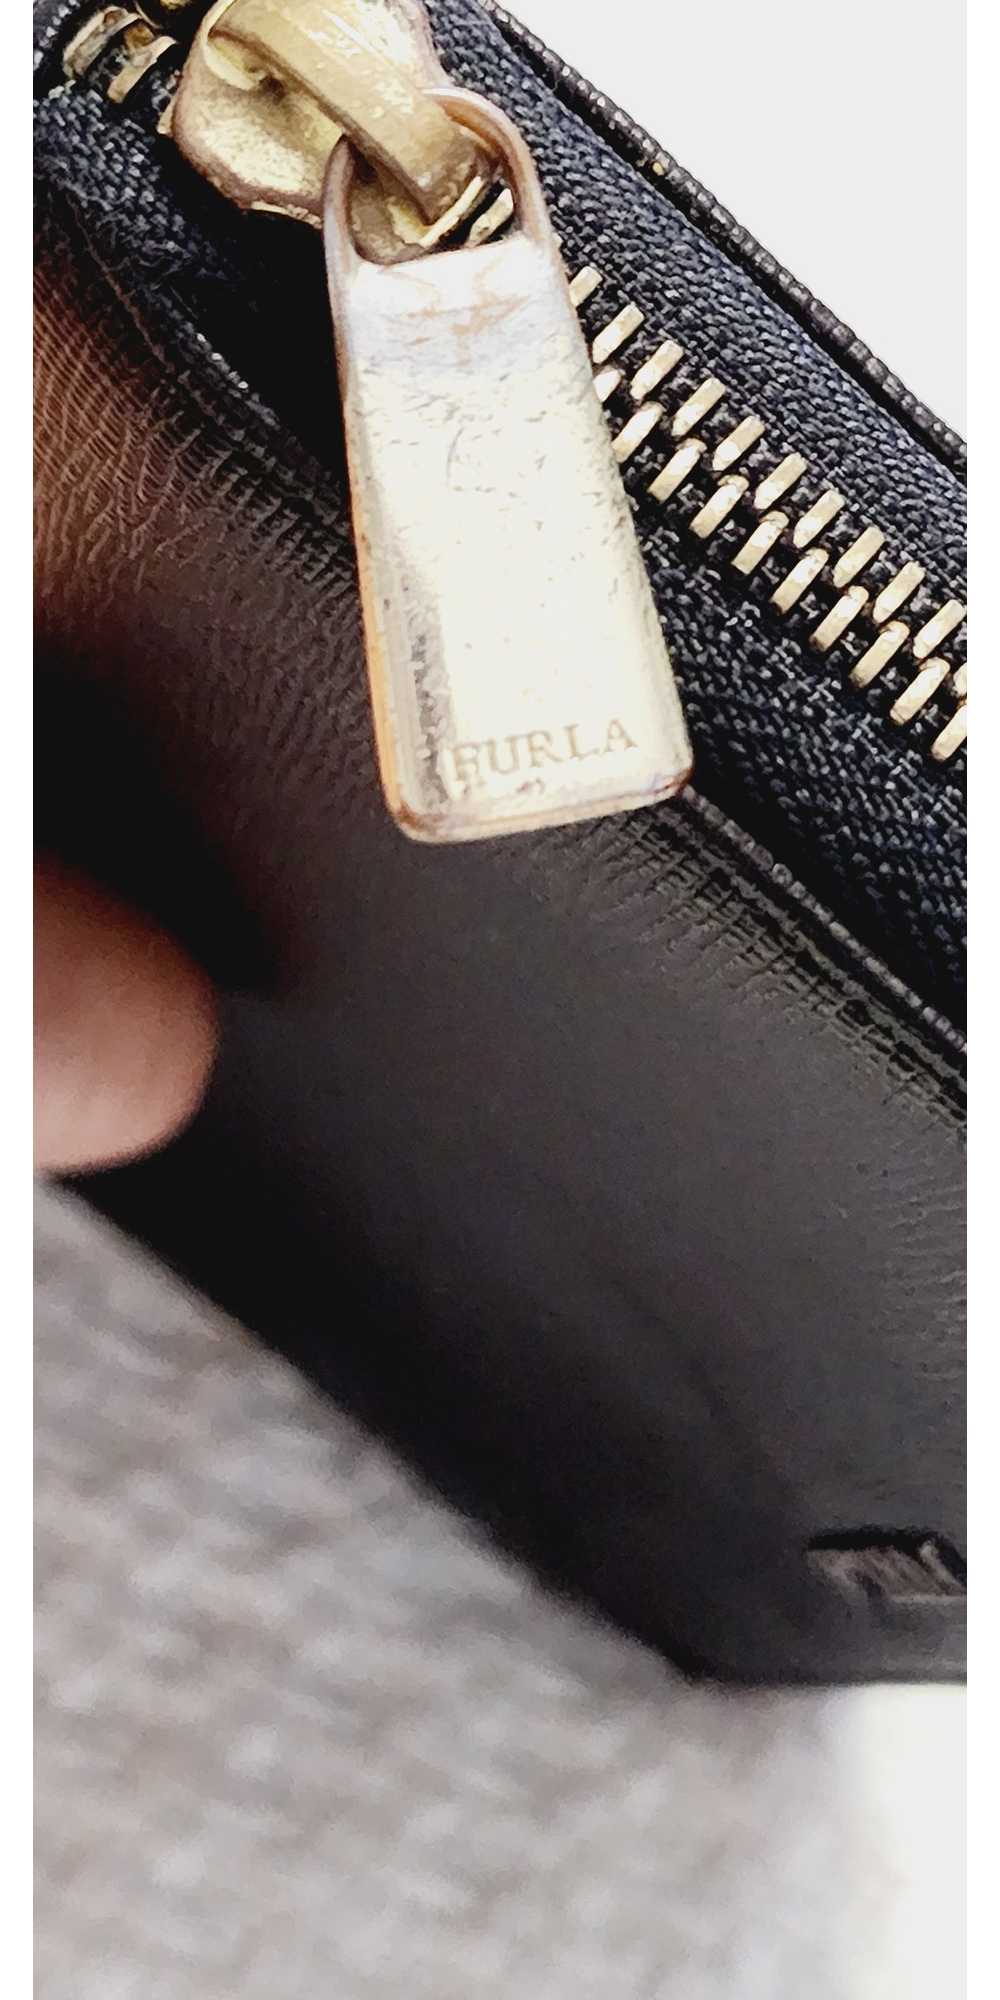 Furla Zippy Wallet - image 6